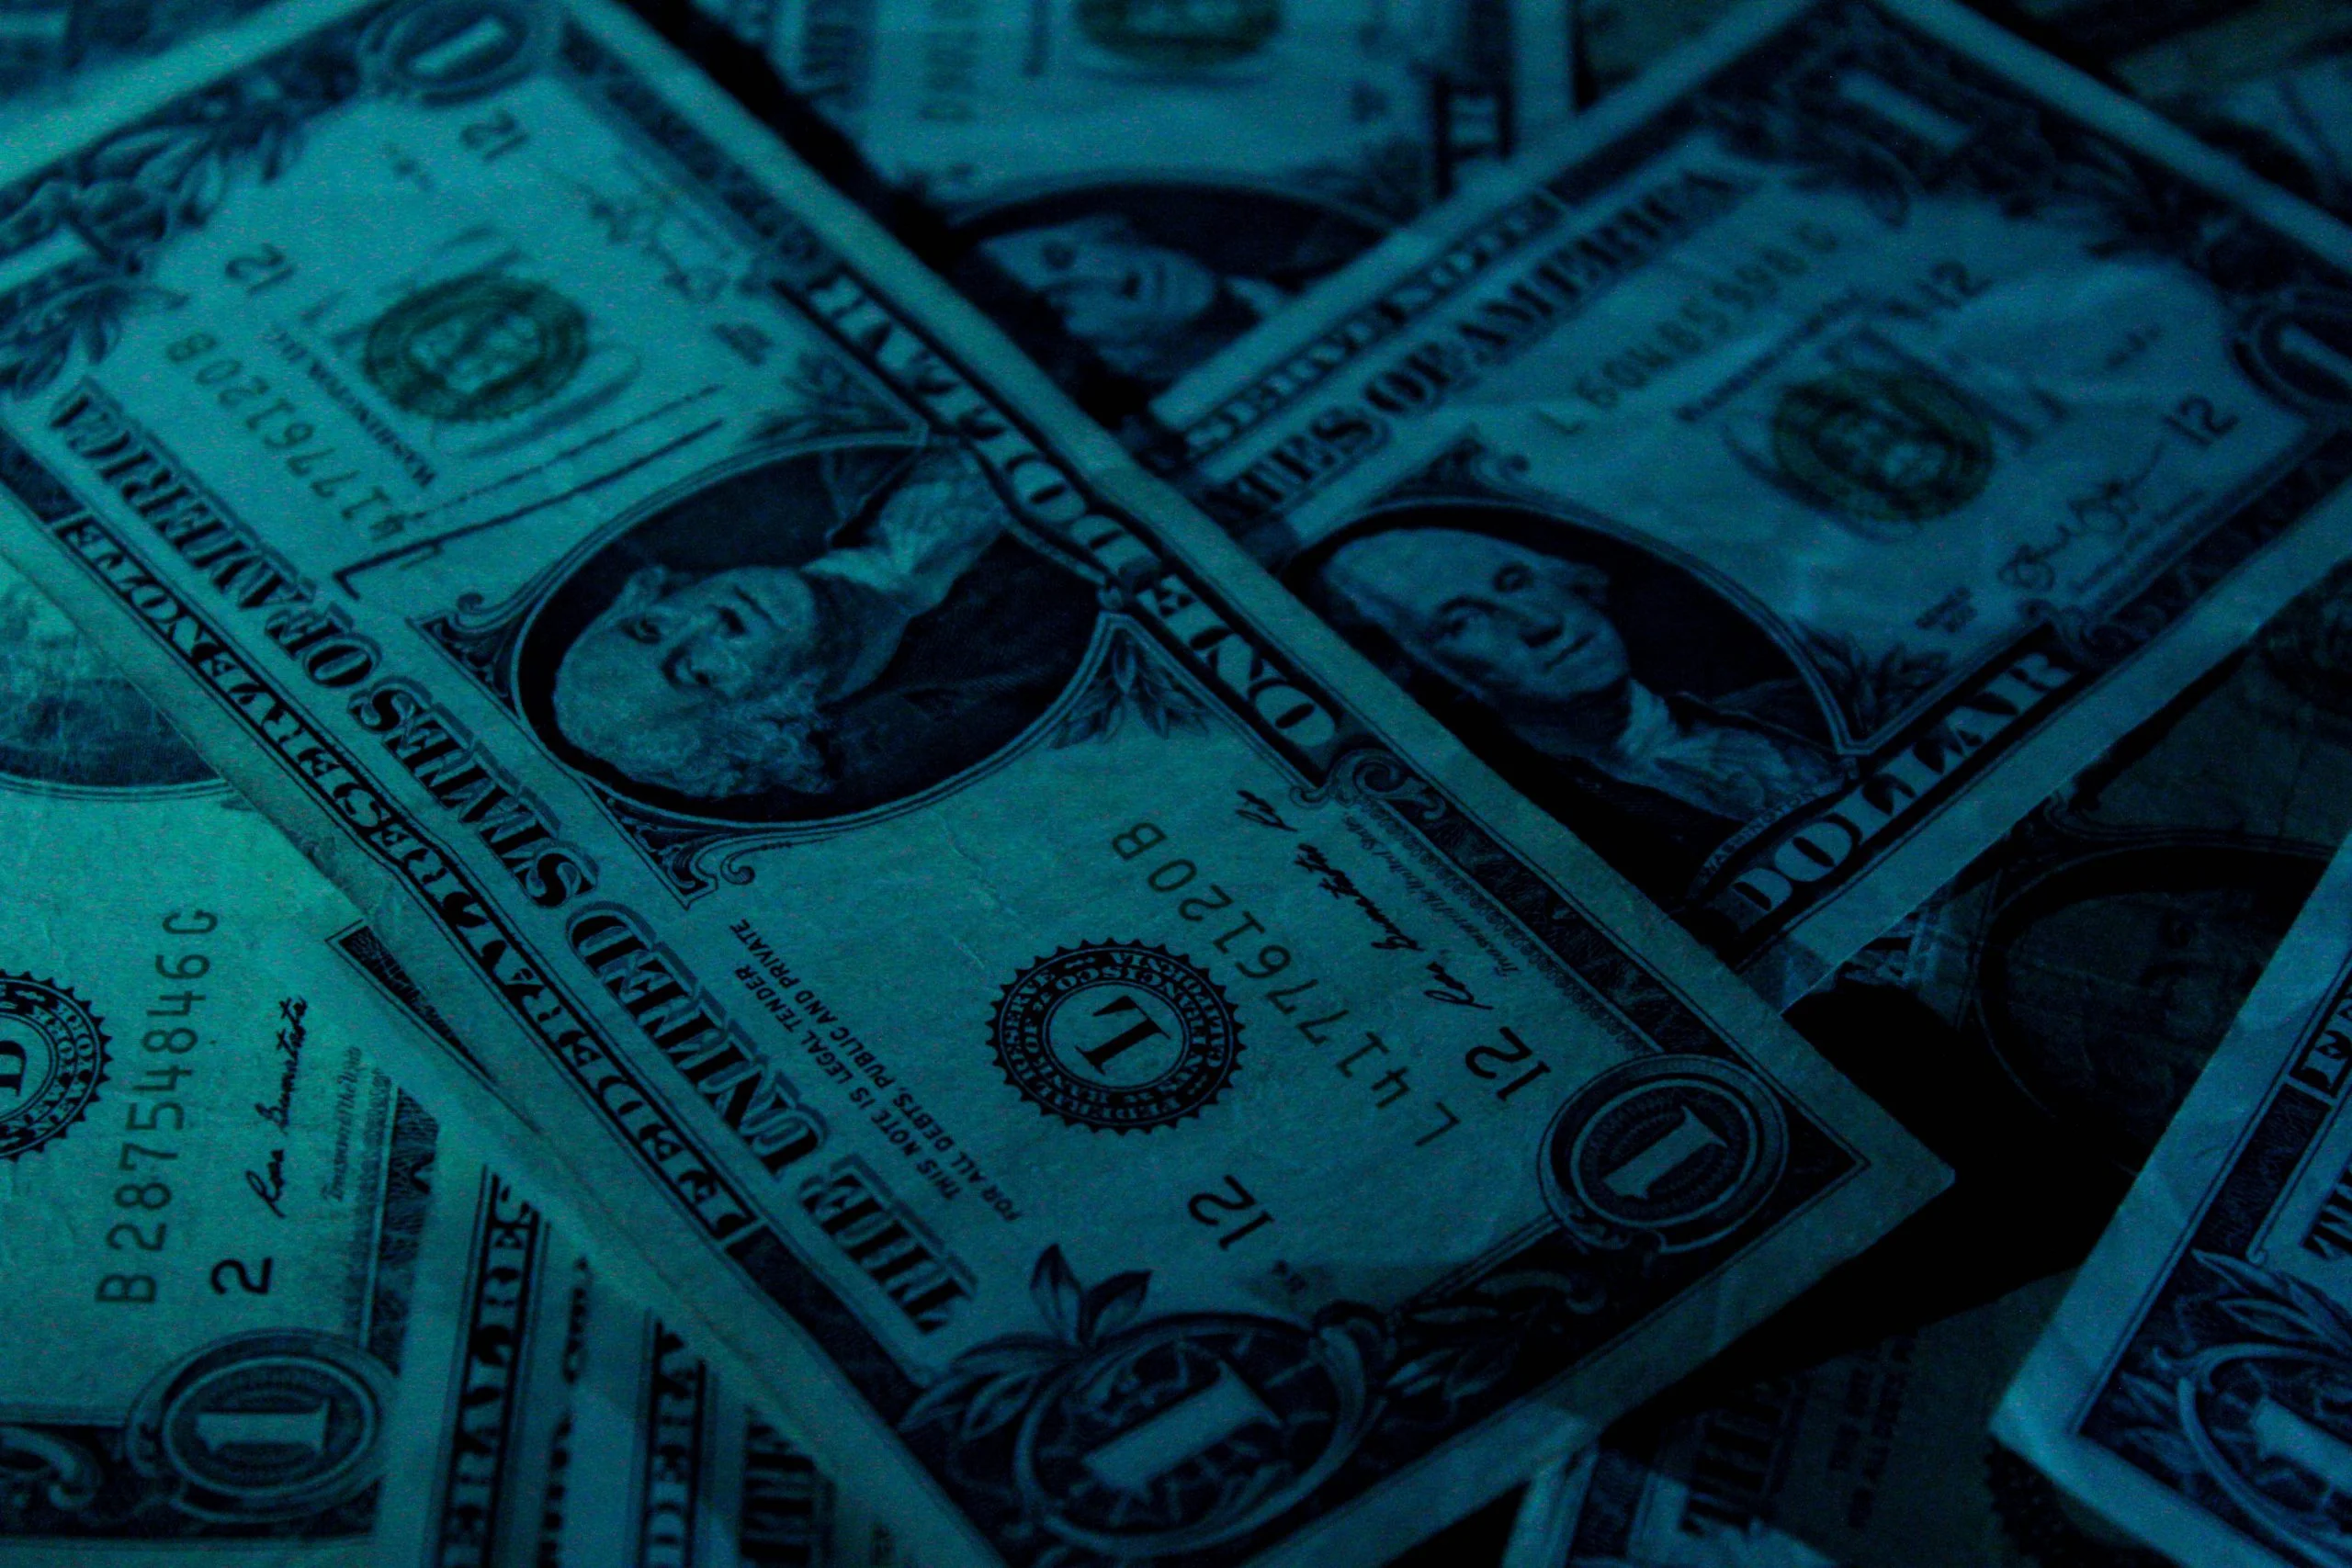 US Dollar bank notes